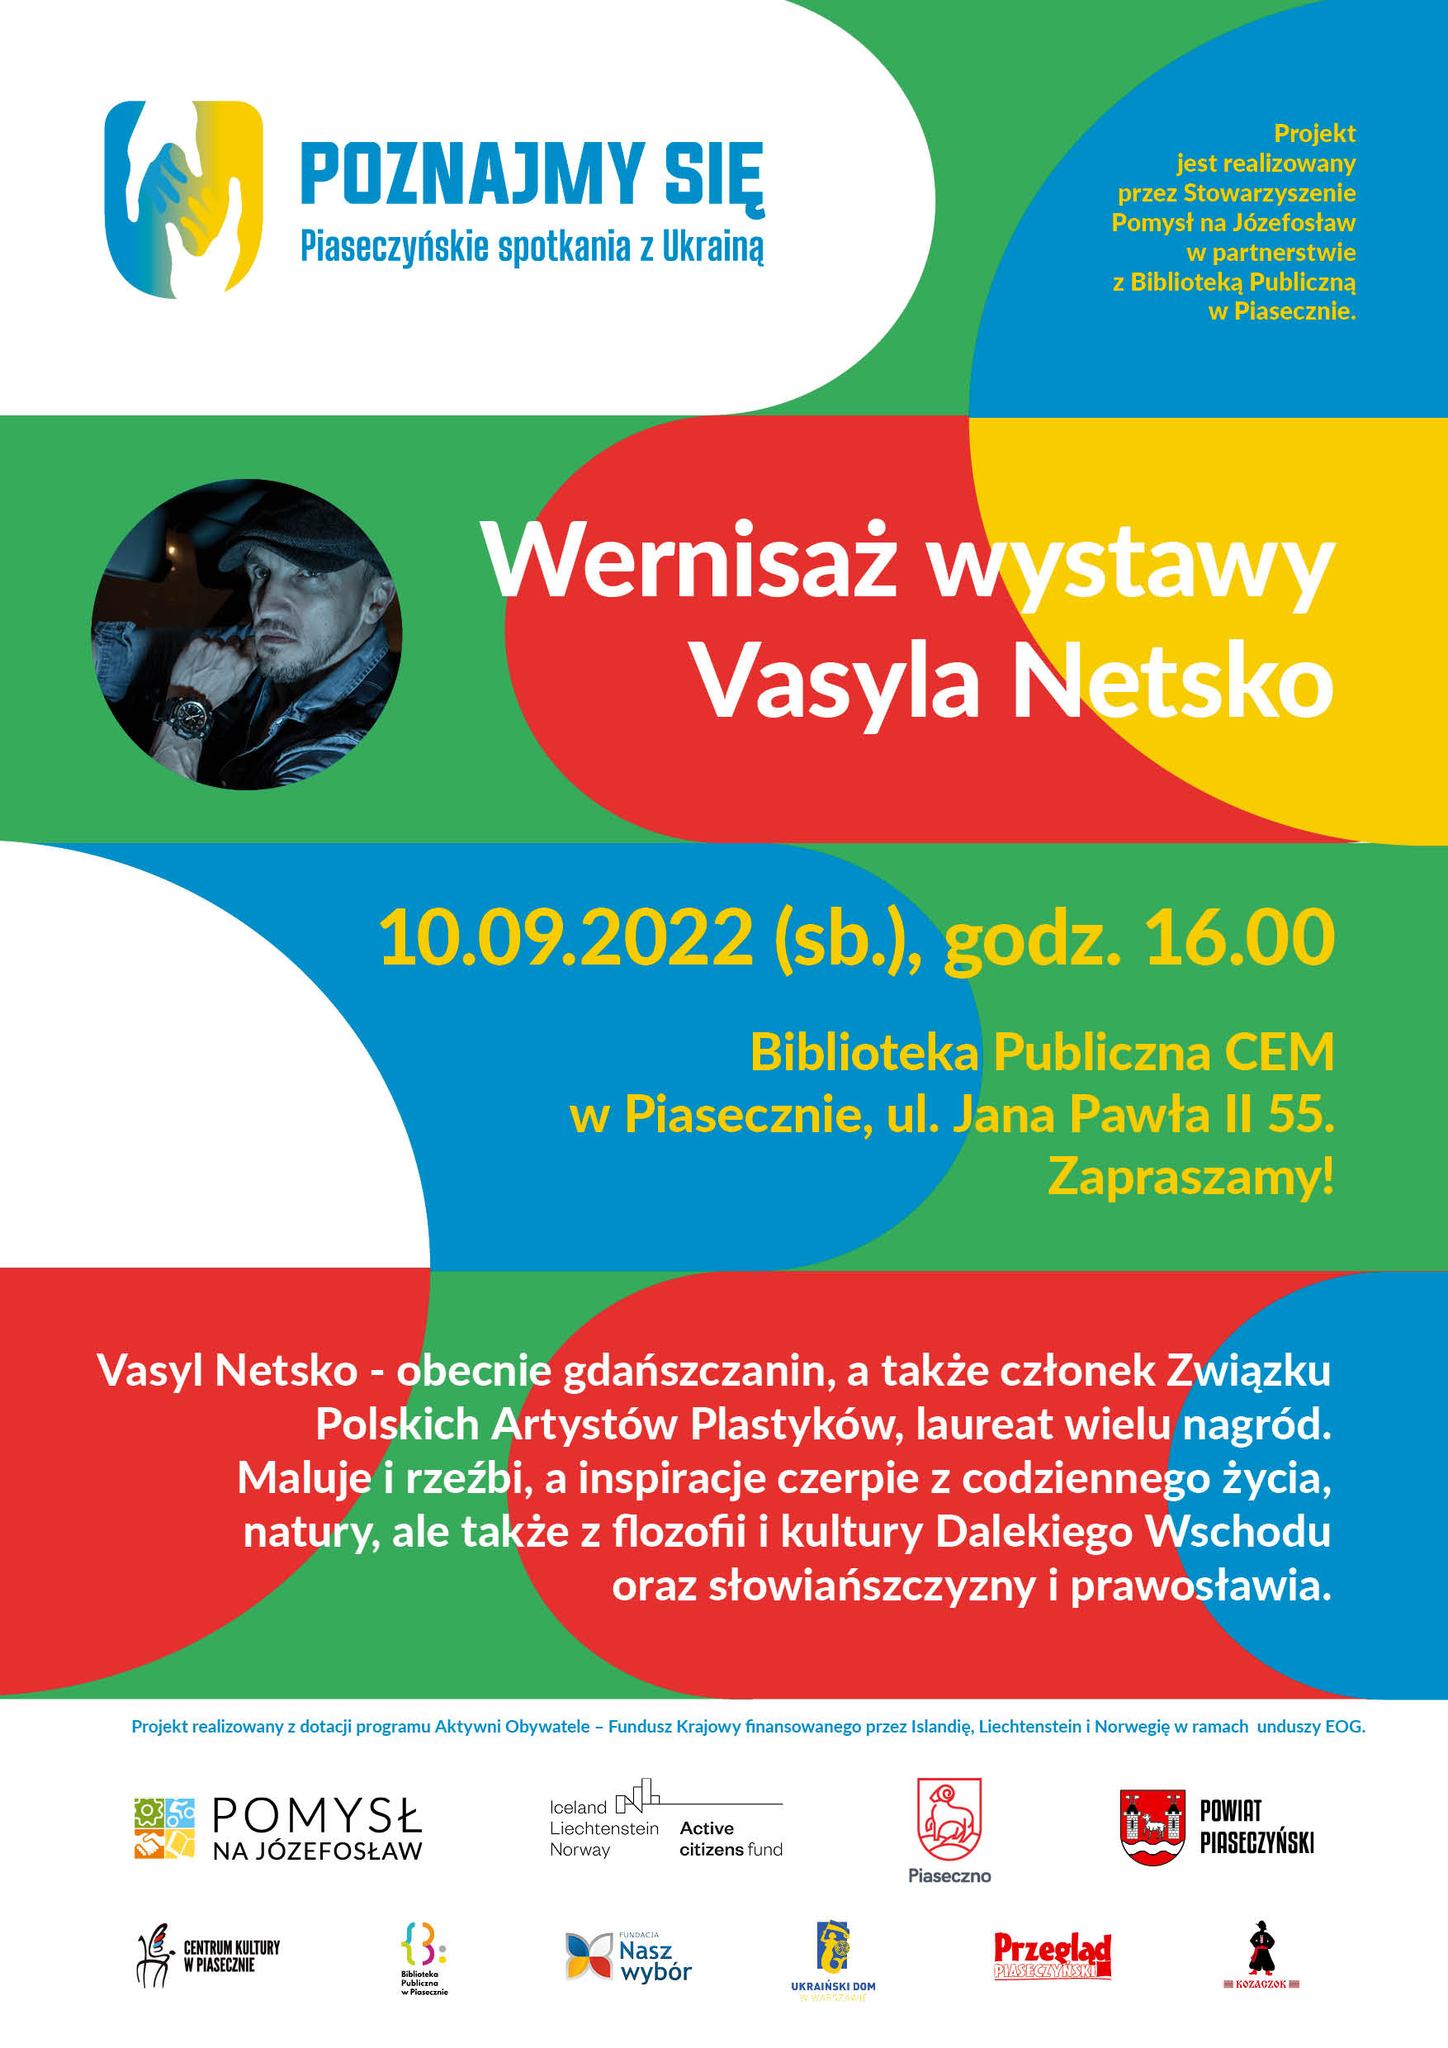 Vasyl Netsko - plakat informujący o wernisażu